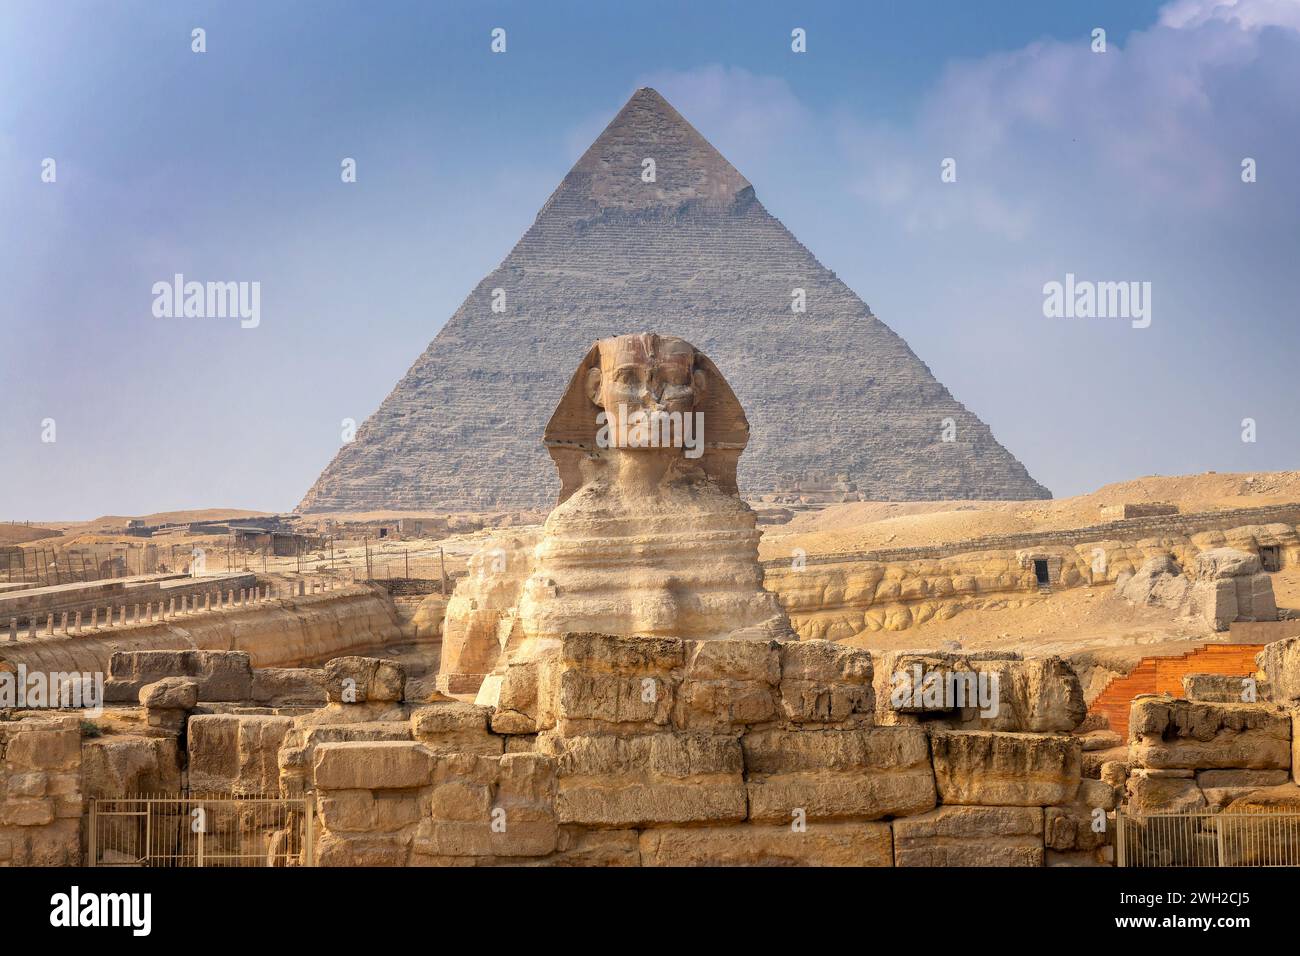 Vue de face du Grand Sphinx de Gizeh avec la pyramide de Khafre, le Caire, Egypte Banque D'Images